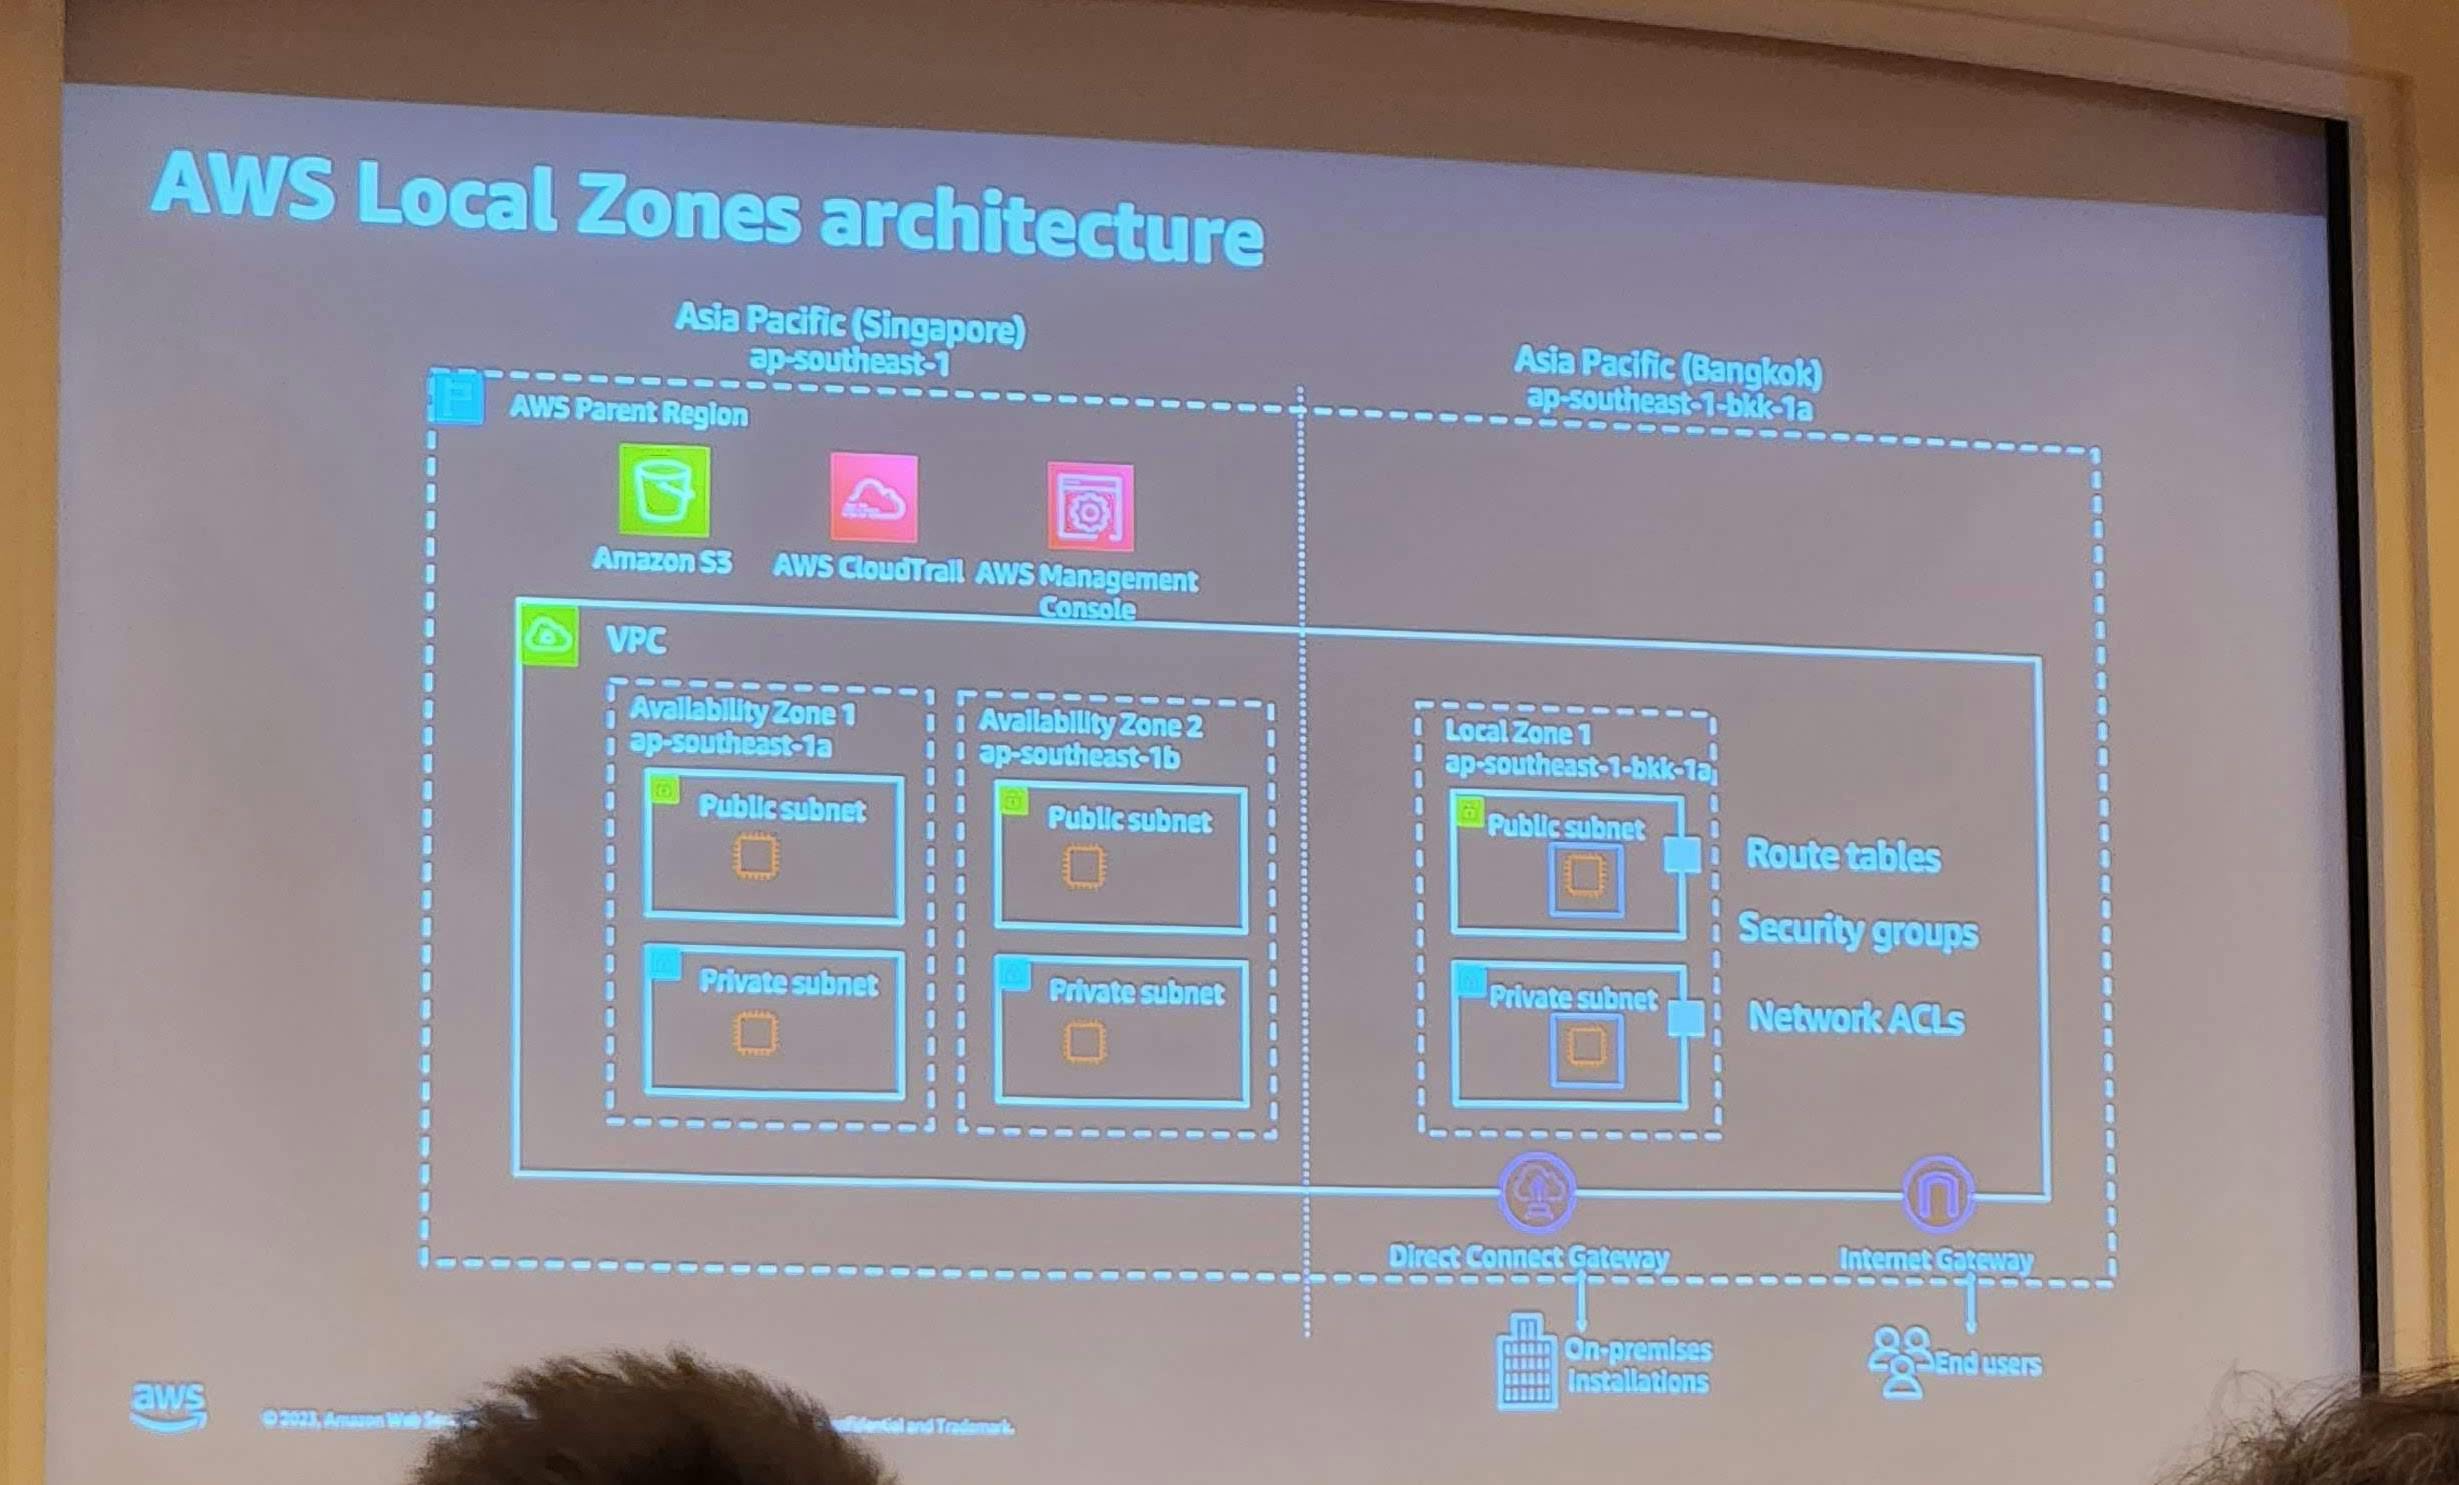 หน้าตา architecture ของ AWS Local Zone